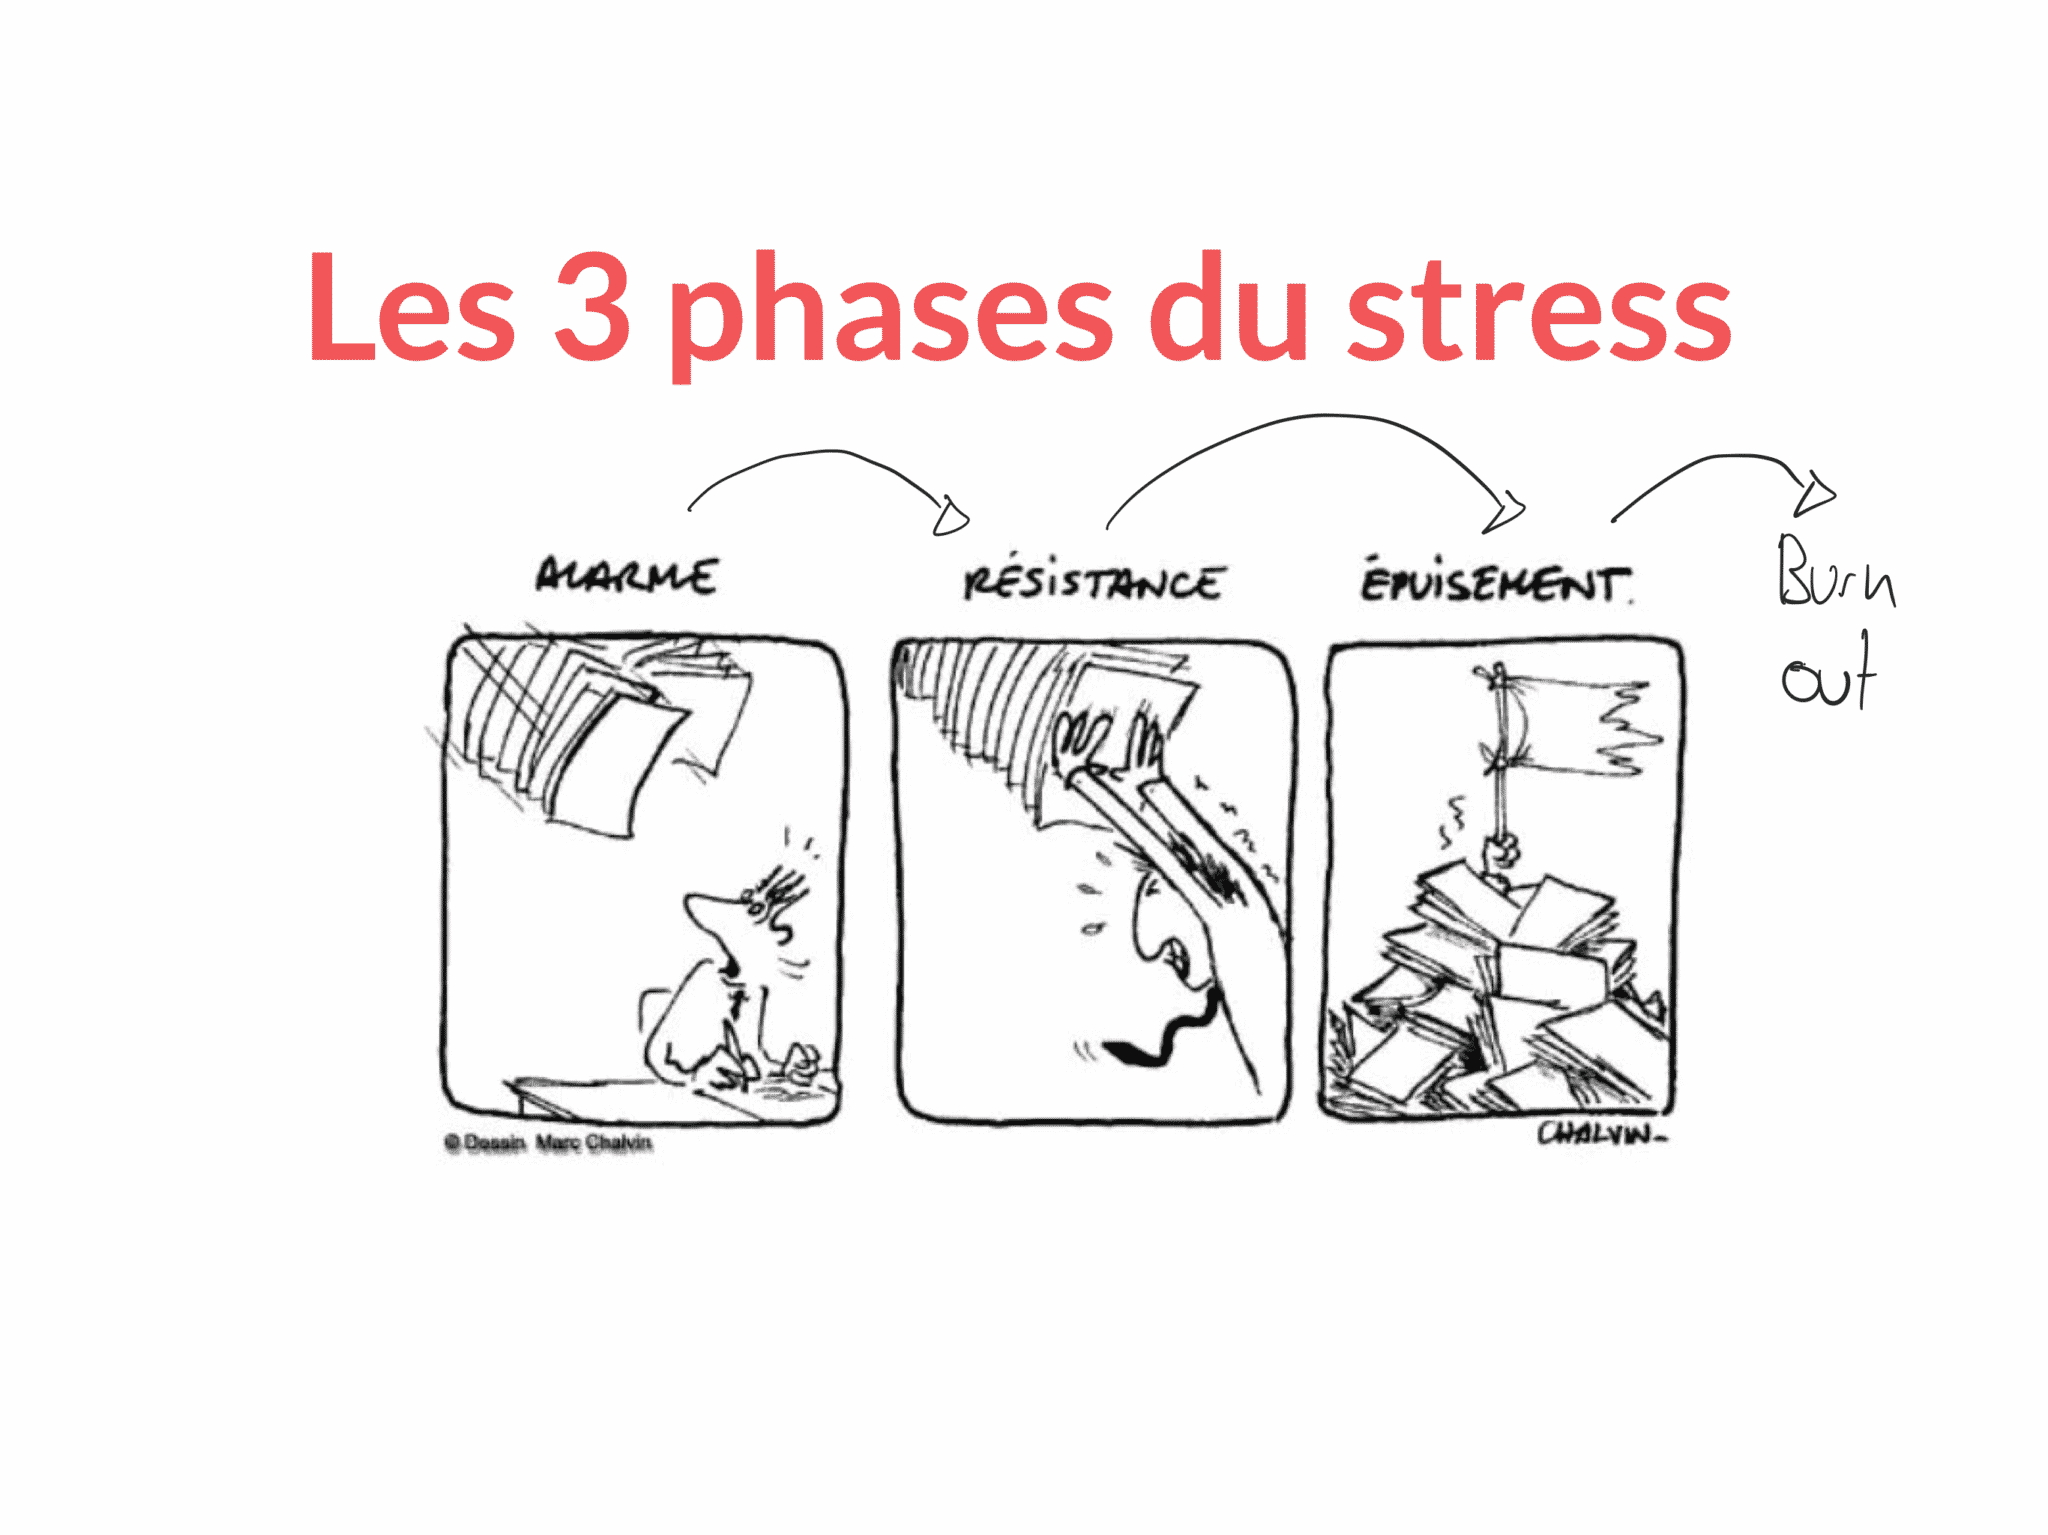 Les 3 phases du stress